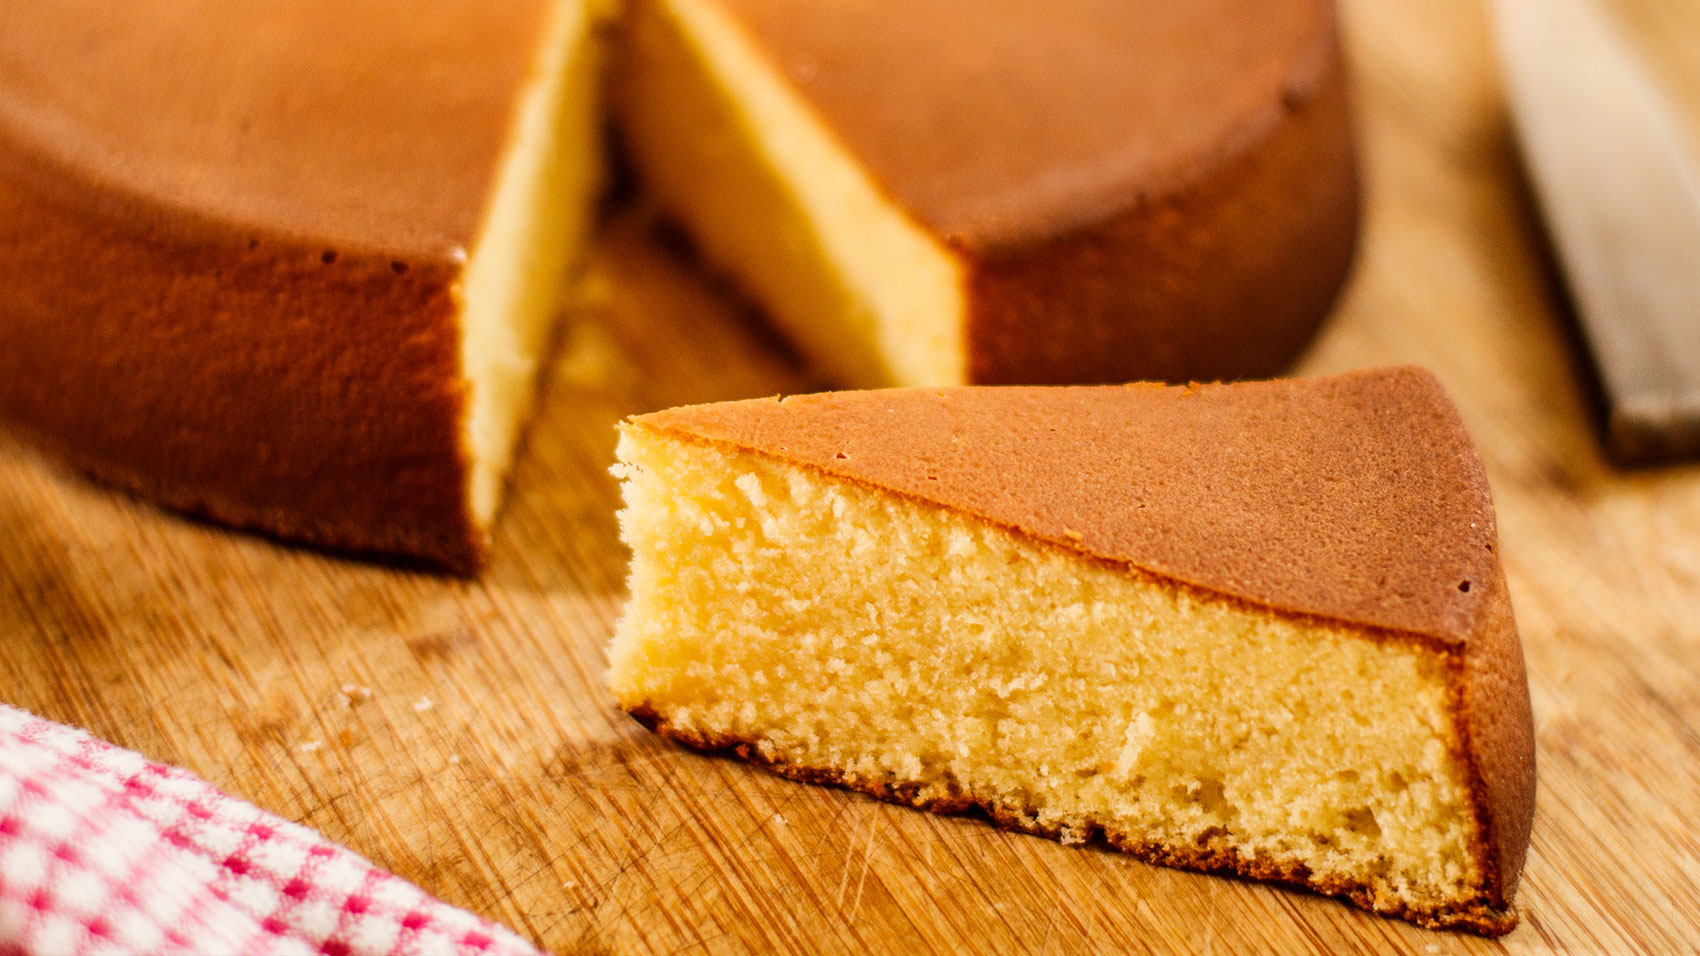 How to make Genoise (Sponge Cake) - Wheel of Baking